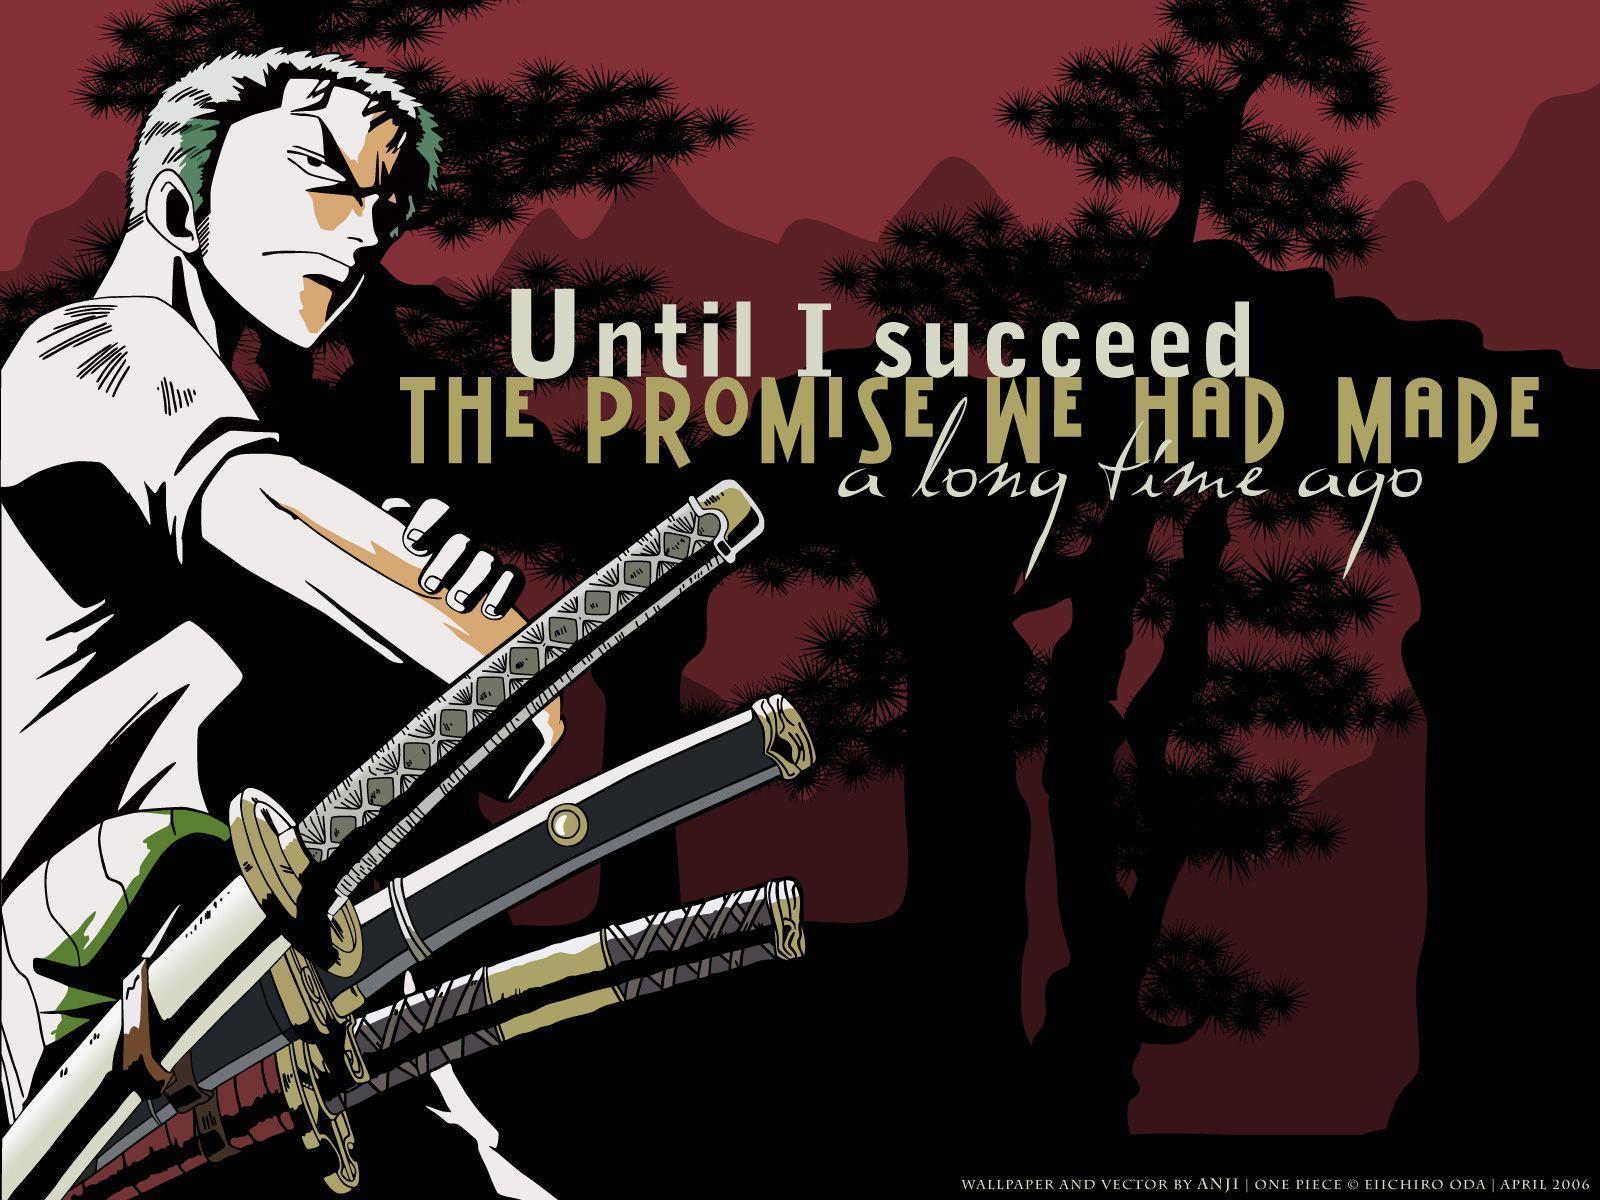 Imagen de One Piece con frase de Roronoa Zoro. Pelis, libros